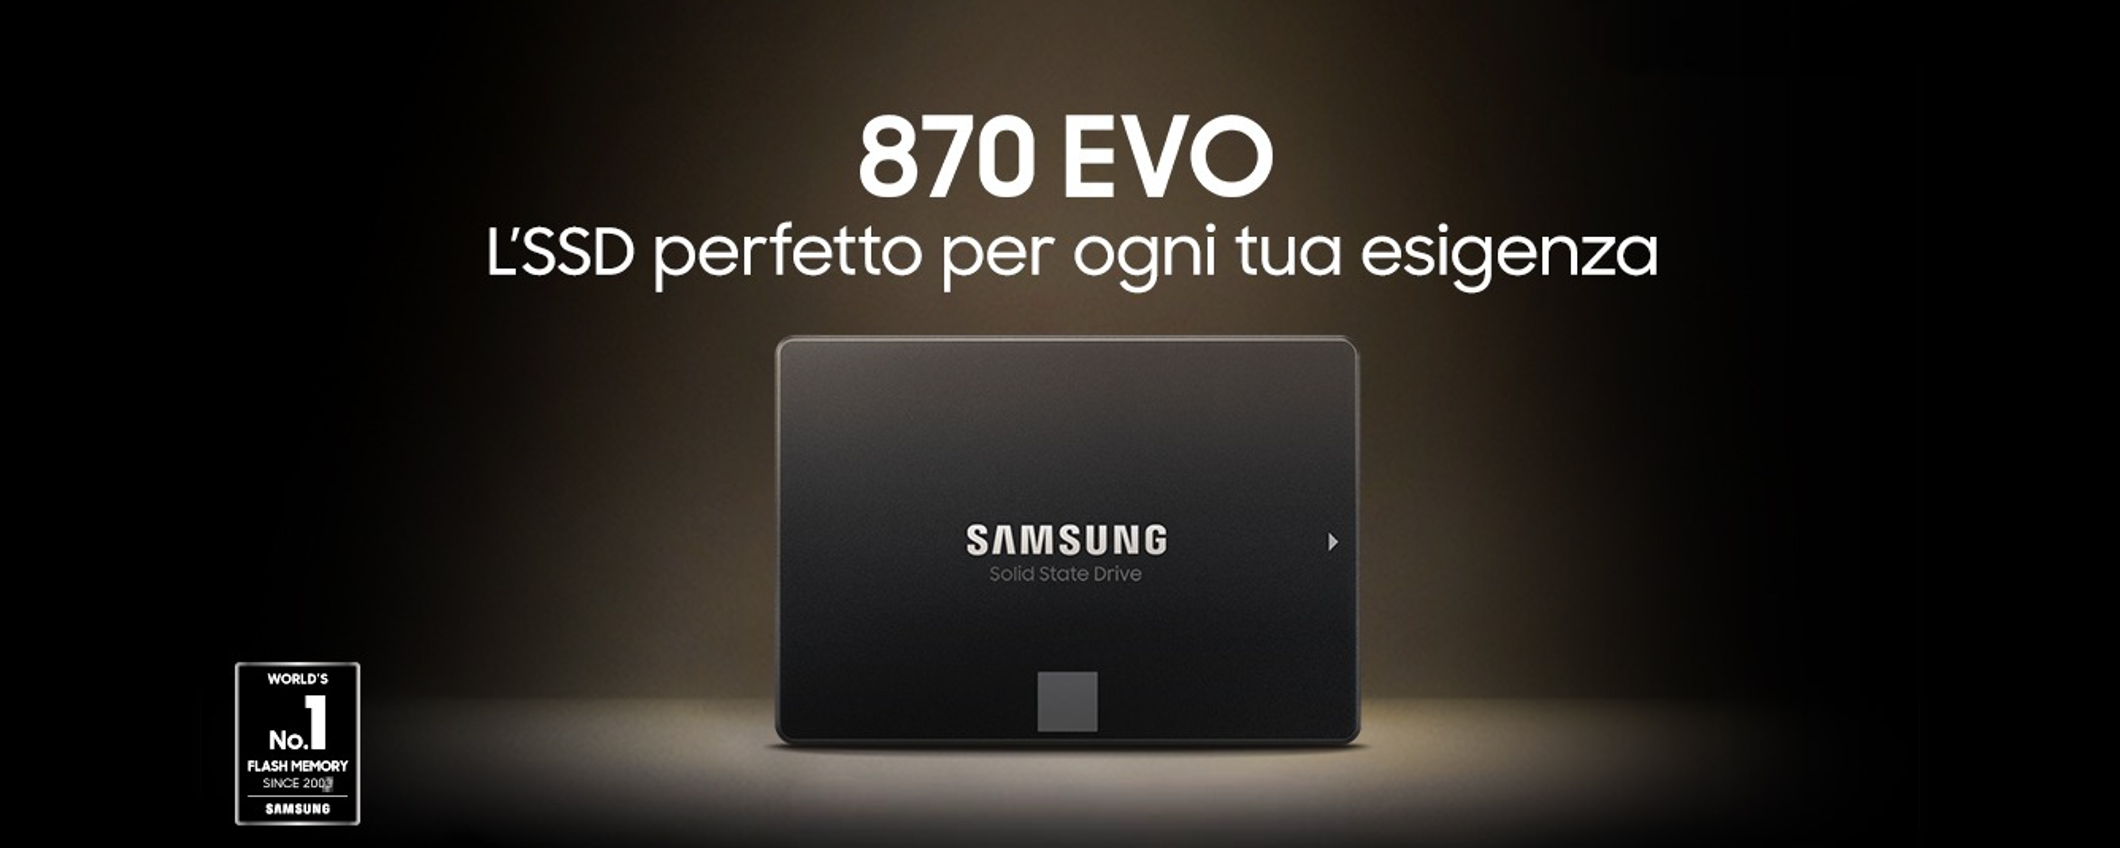 SSD 1TB Samsung a poco più di 90€: nuovo MINIMO STORICO